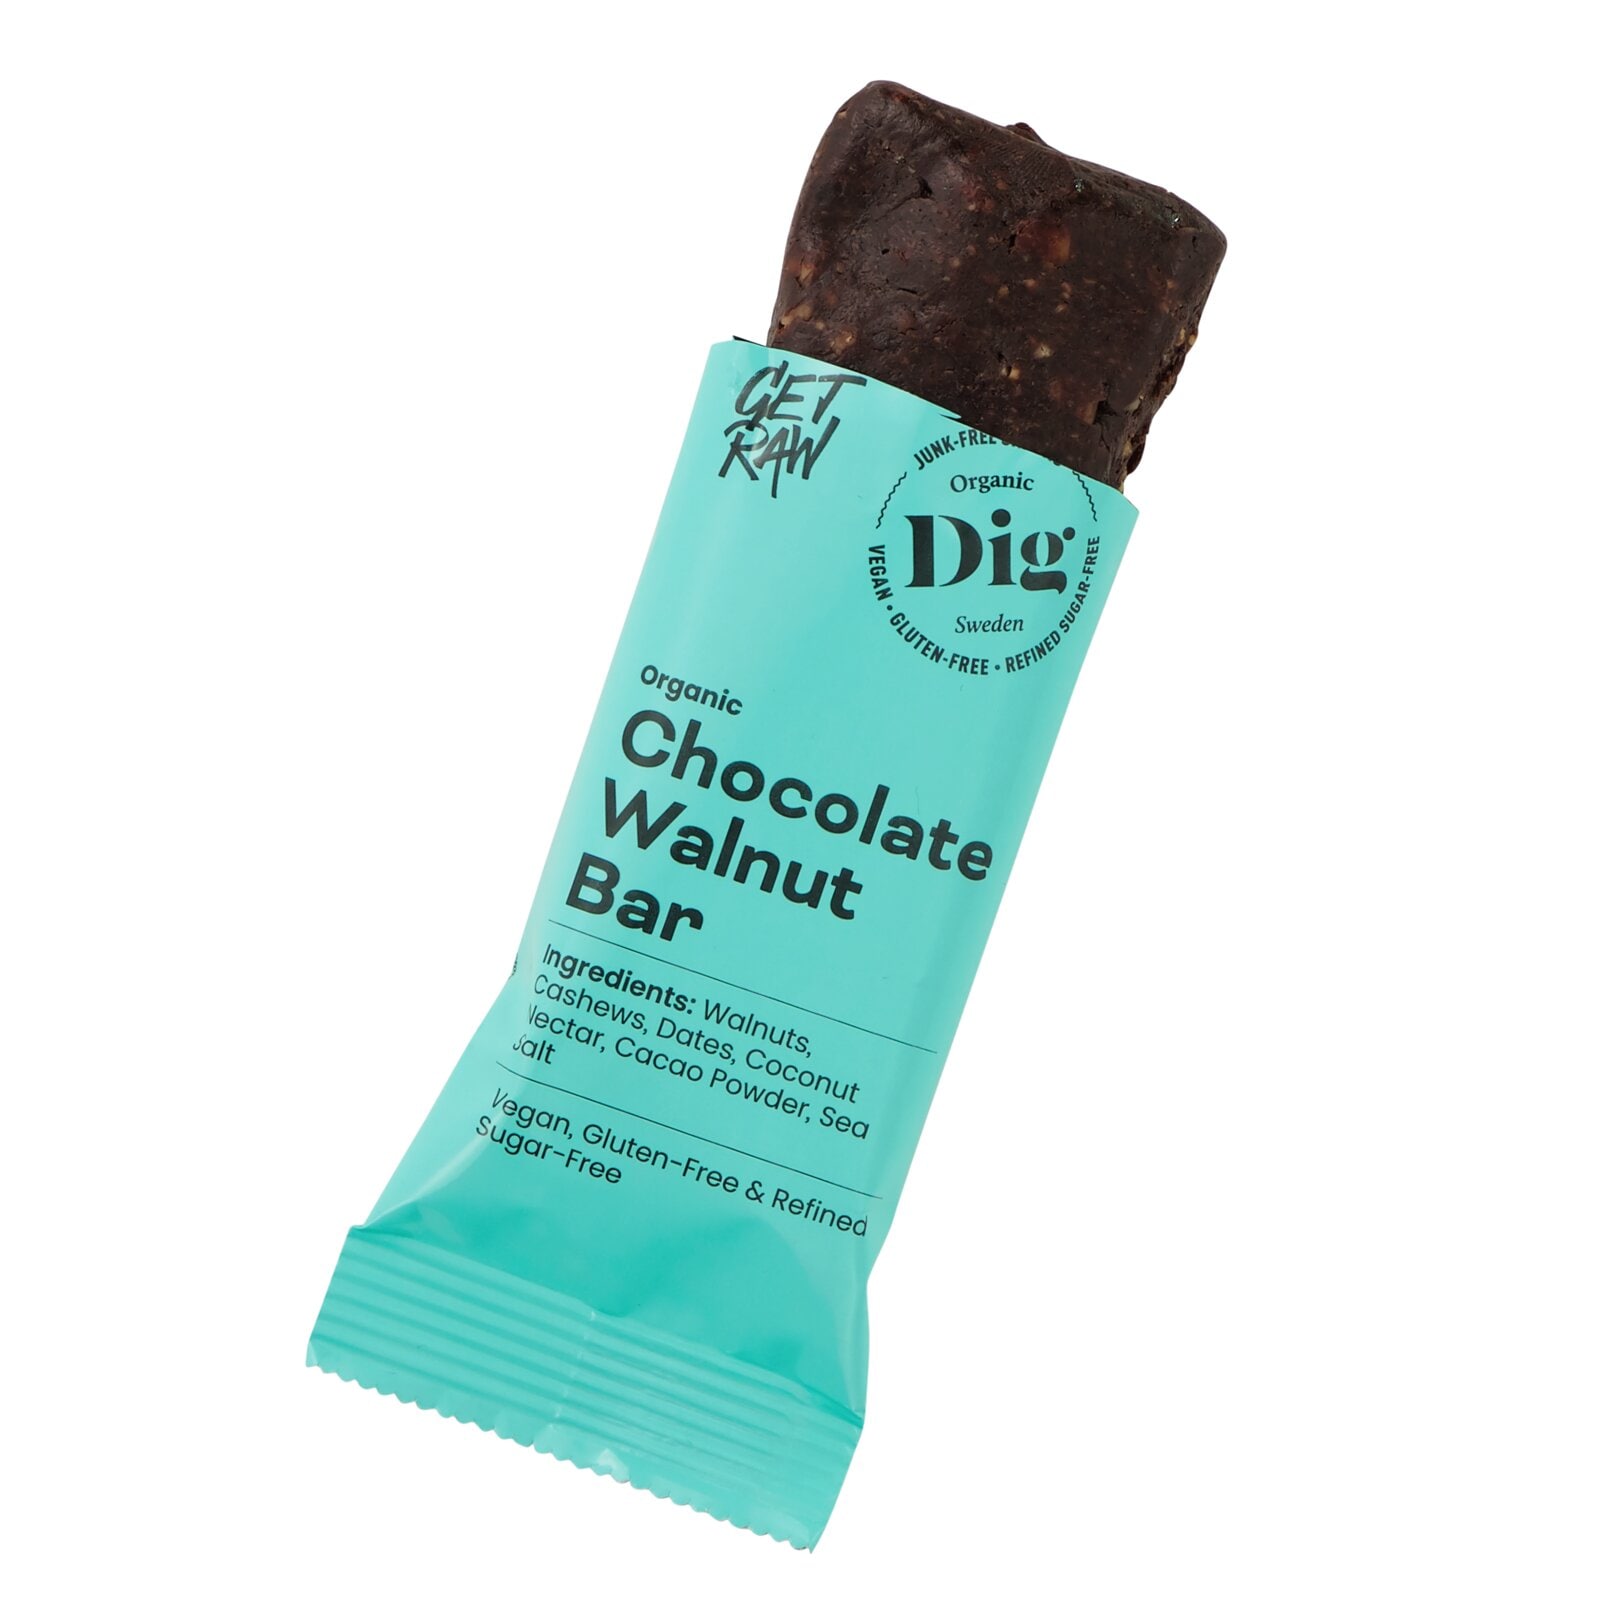 Dig Chocolate Walnut Bar